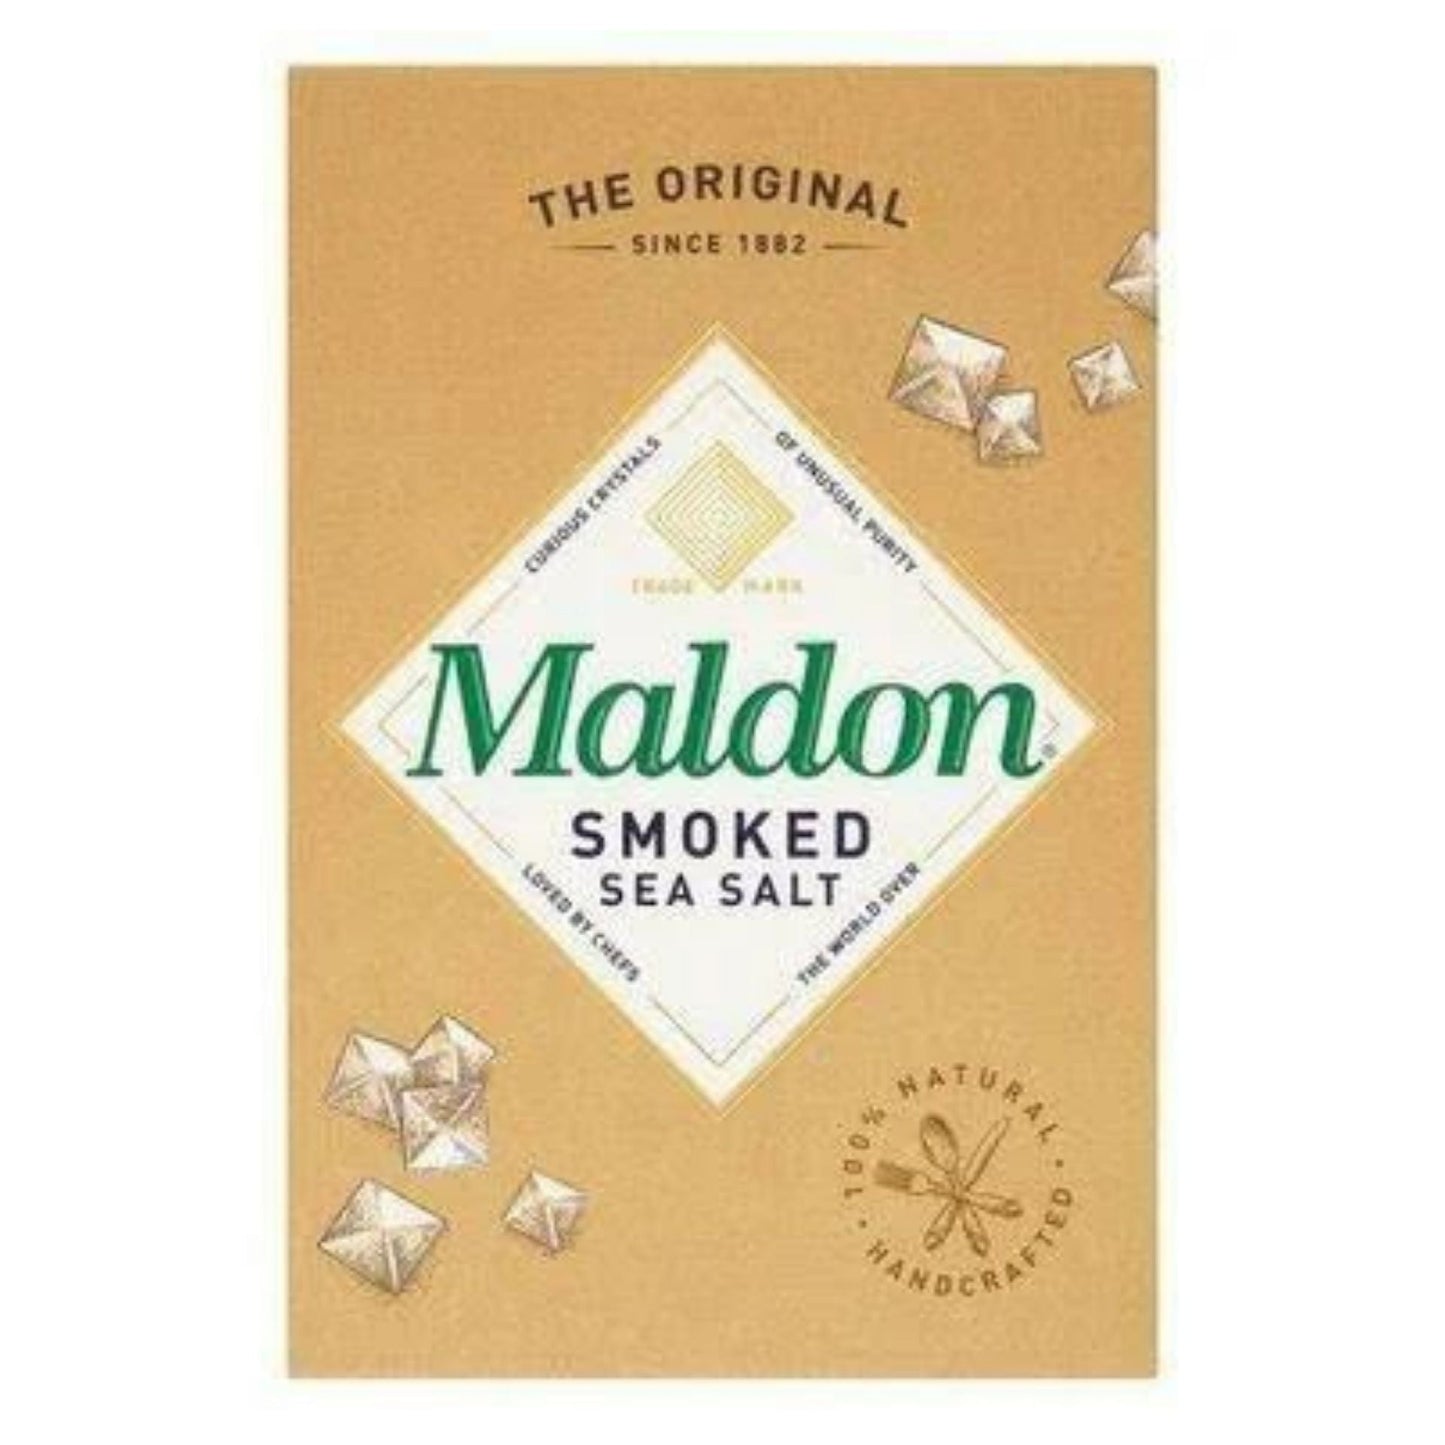 This is a Smoked Maldon Salt